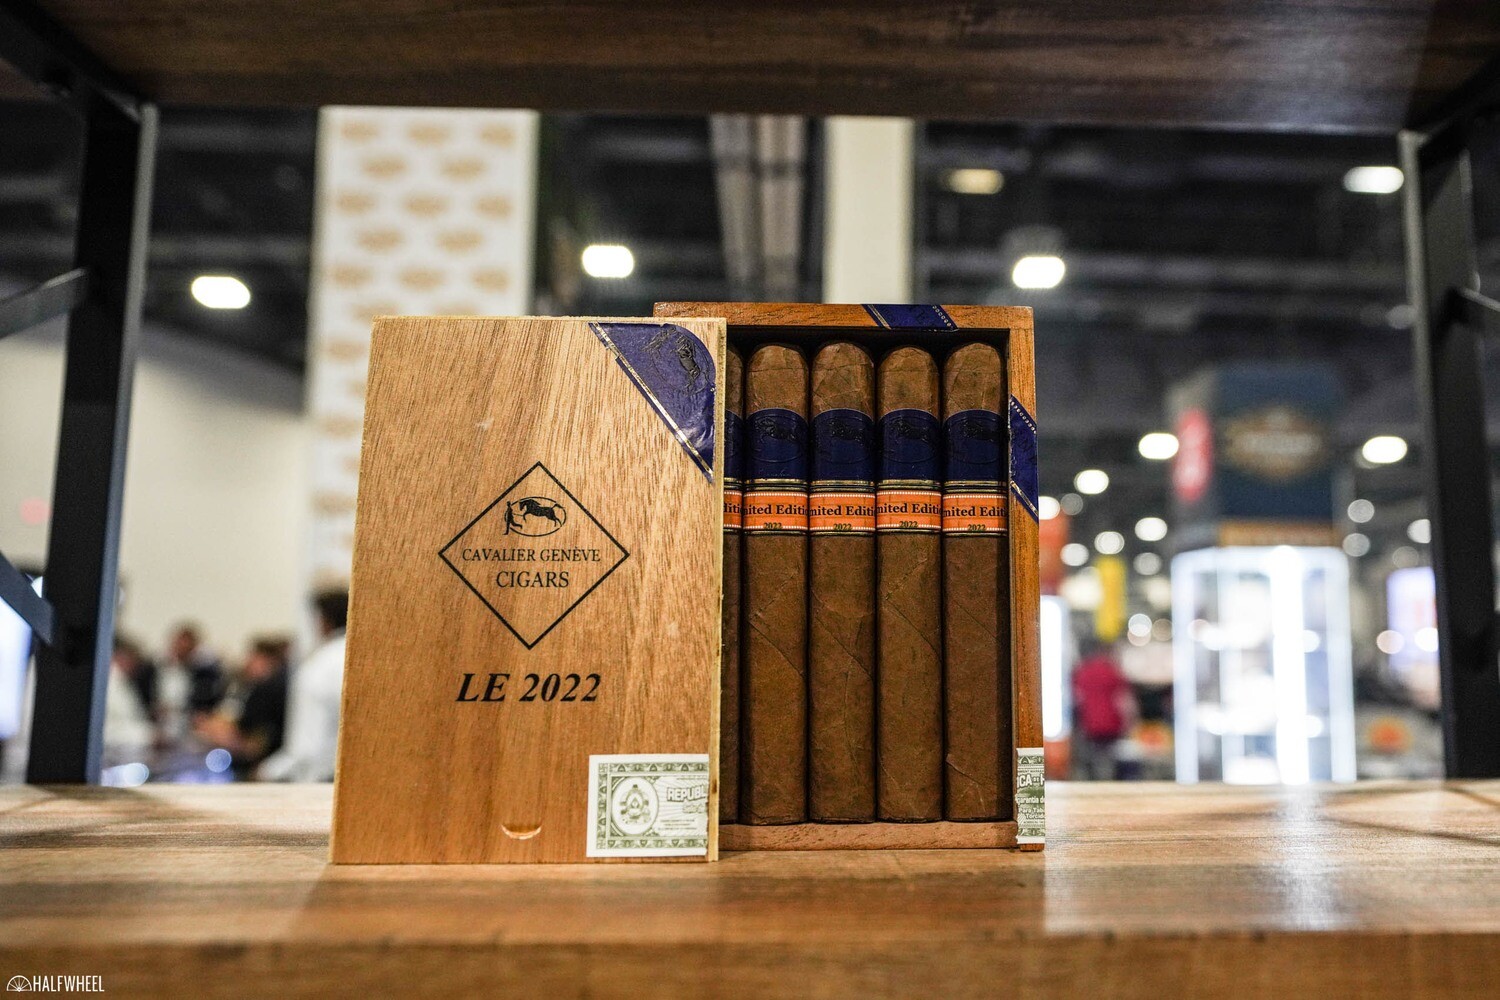 Cavalier Geneve LE 2022 6 X 54 Single Cigar